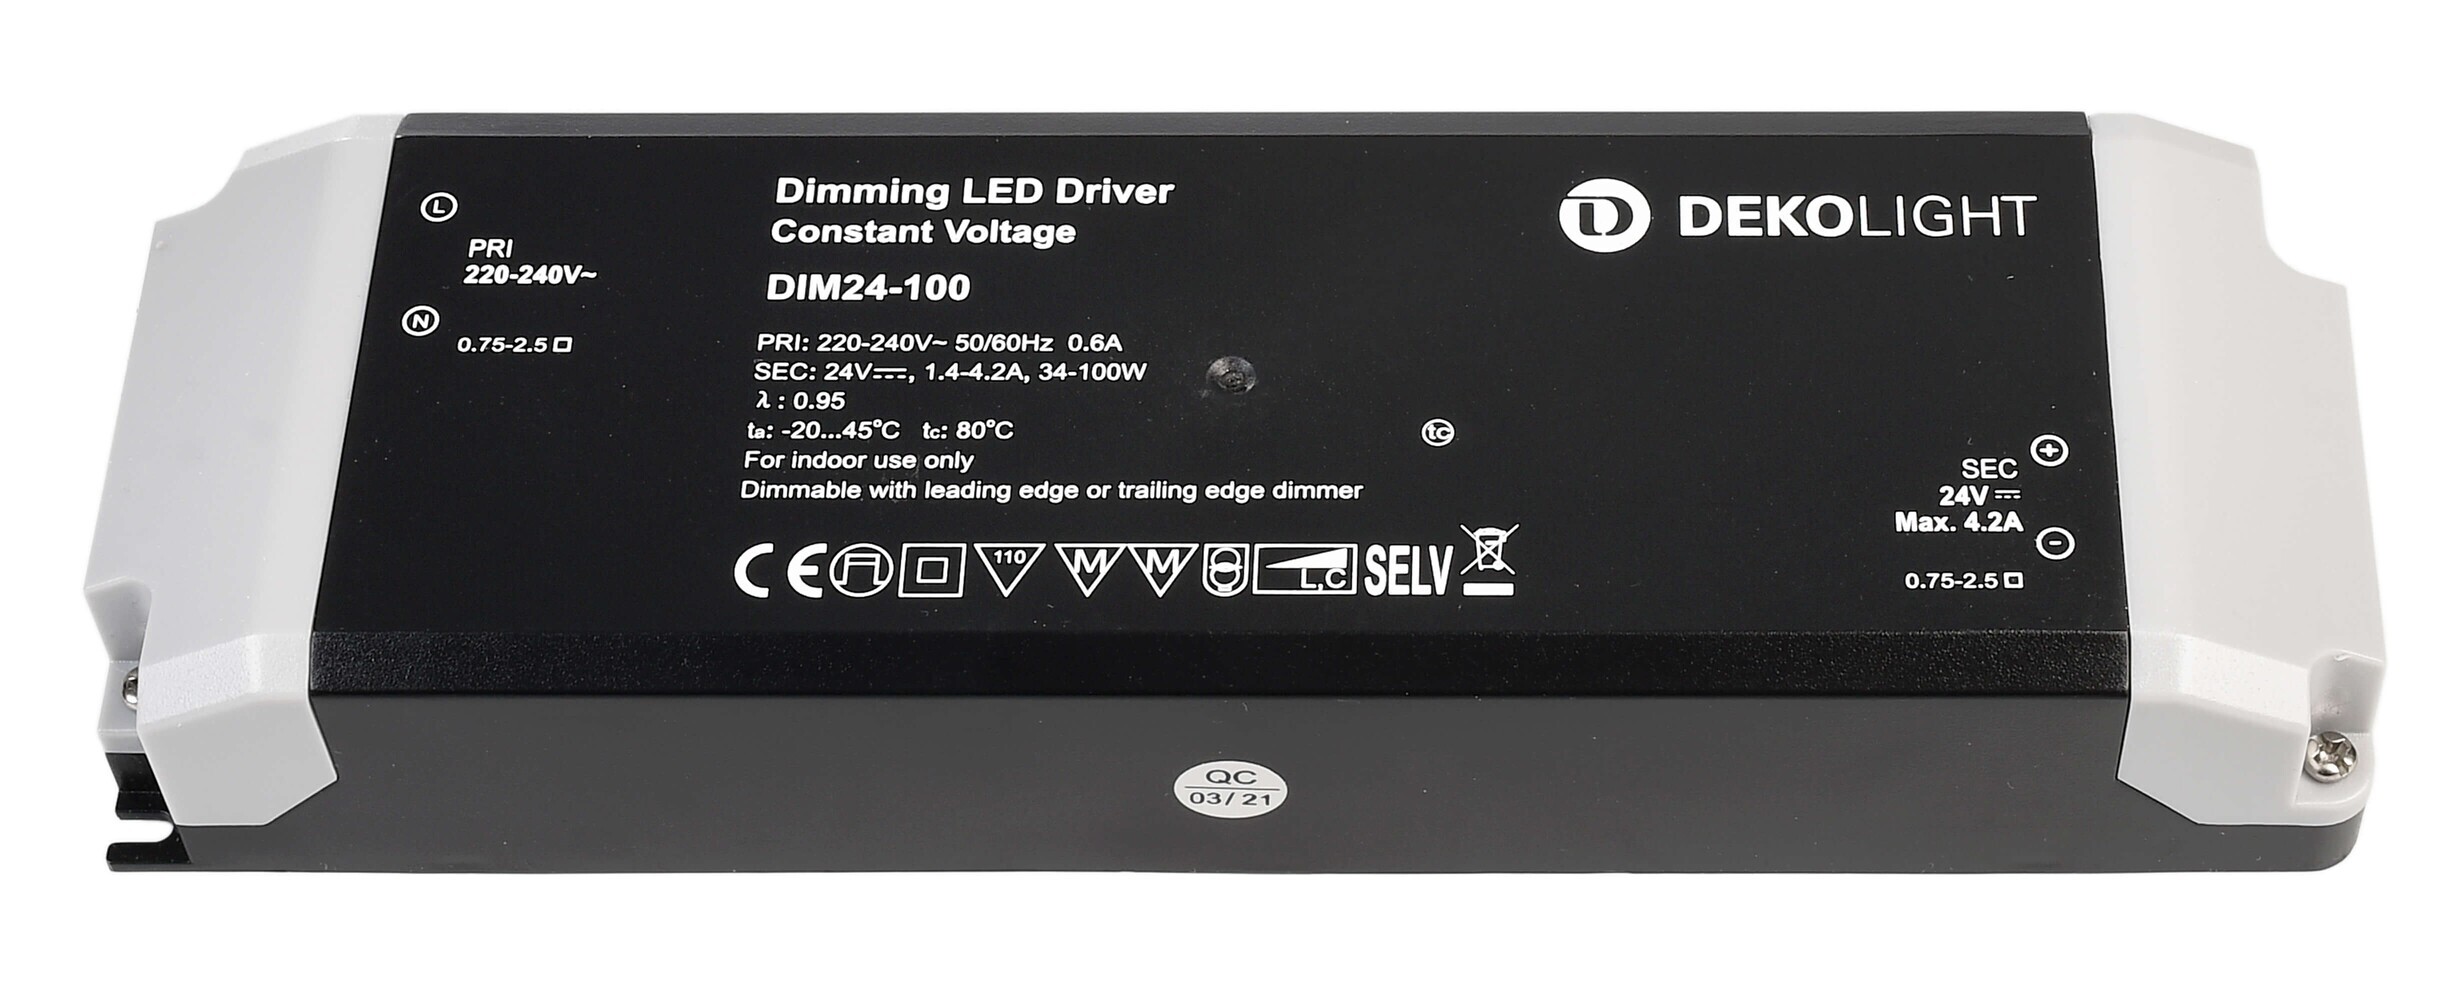 Hochwertiges und dimmbares LED Netzteil der Marke Deko-Light